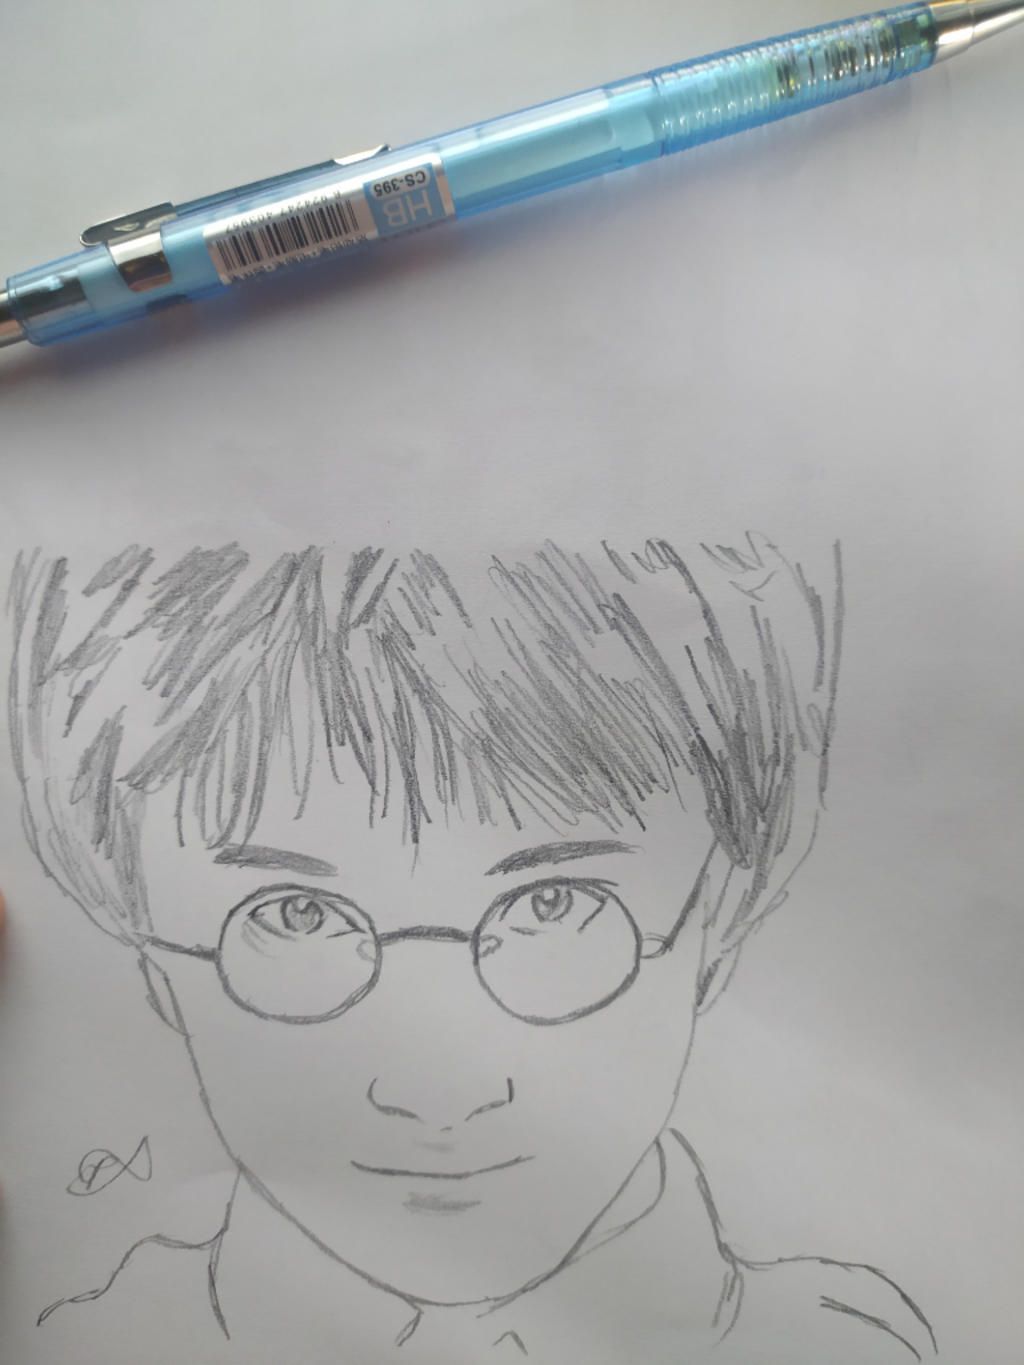 Bạn muốn học cách vẽ chân dung Harry Potter độc đáo và tuyệt đẹp? Hãy để bức tranh đưa bạn vào thế giới phù thủy và mang đến cho bạn những giây phút thư giãn thú vị nhất. Chắc chắn rằng bạn sẽ bị cuốn hút bởi tài năng và sức sáng tạo của người vẽ. Hãy bấm vào ảnh để khám phá thêm những bí mật và kỹ thuật vẽ chân dung Harry Potter nào!